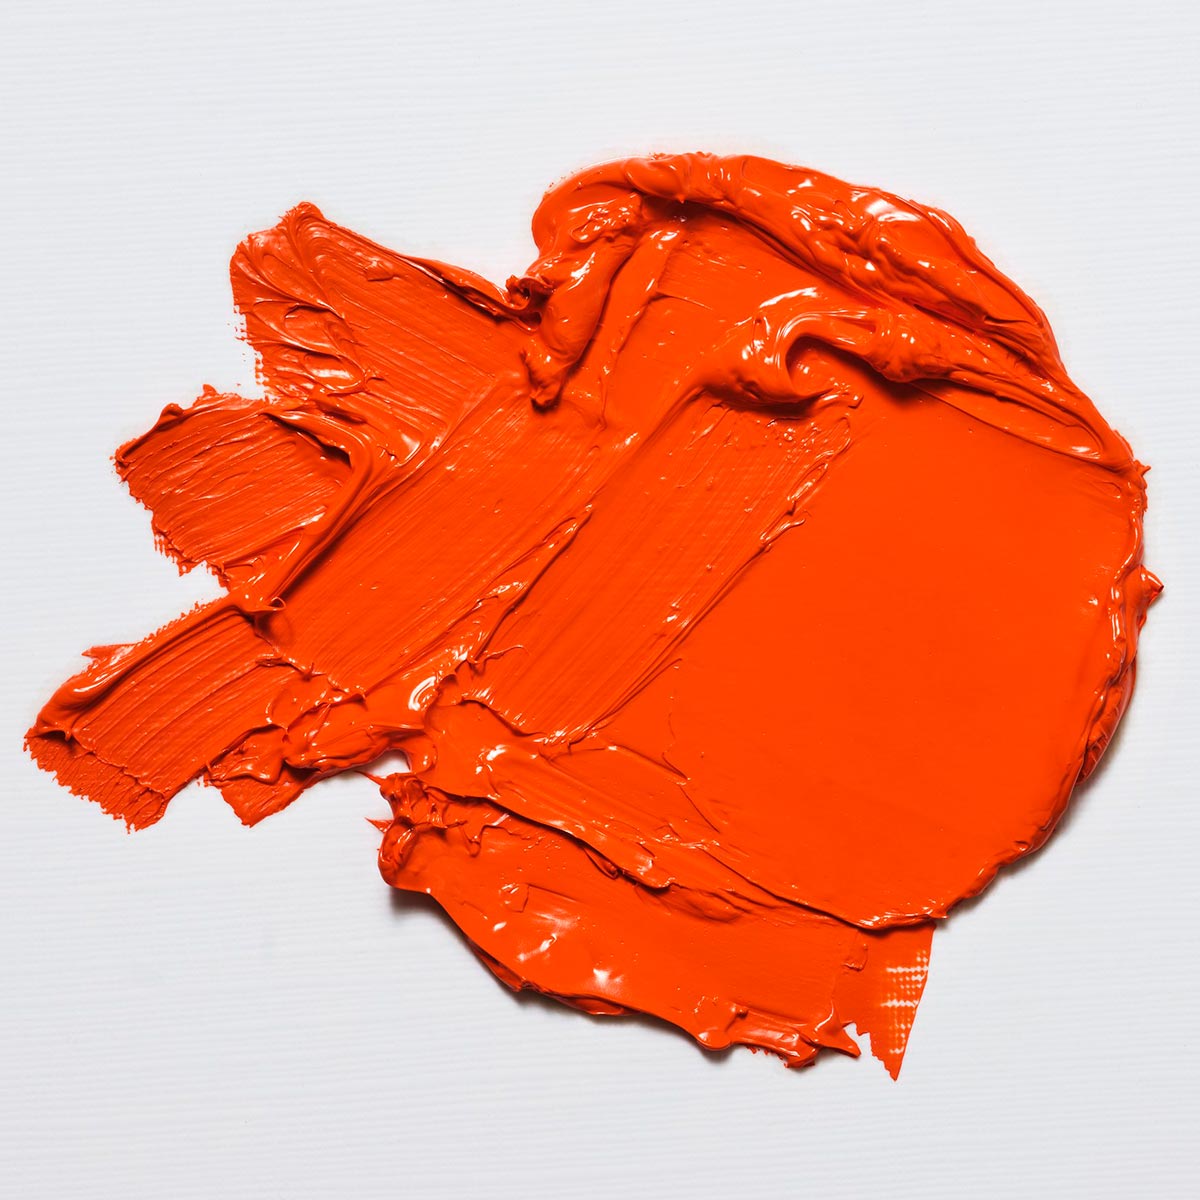 Winsor en Newton - Oilkleur van artiesten - 37 ml - Oranje Laque Mineral S2